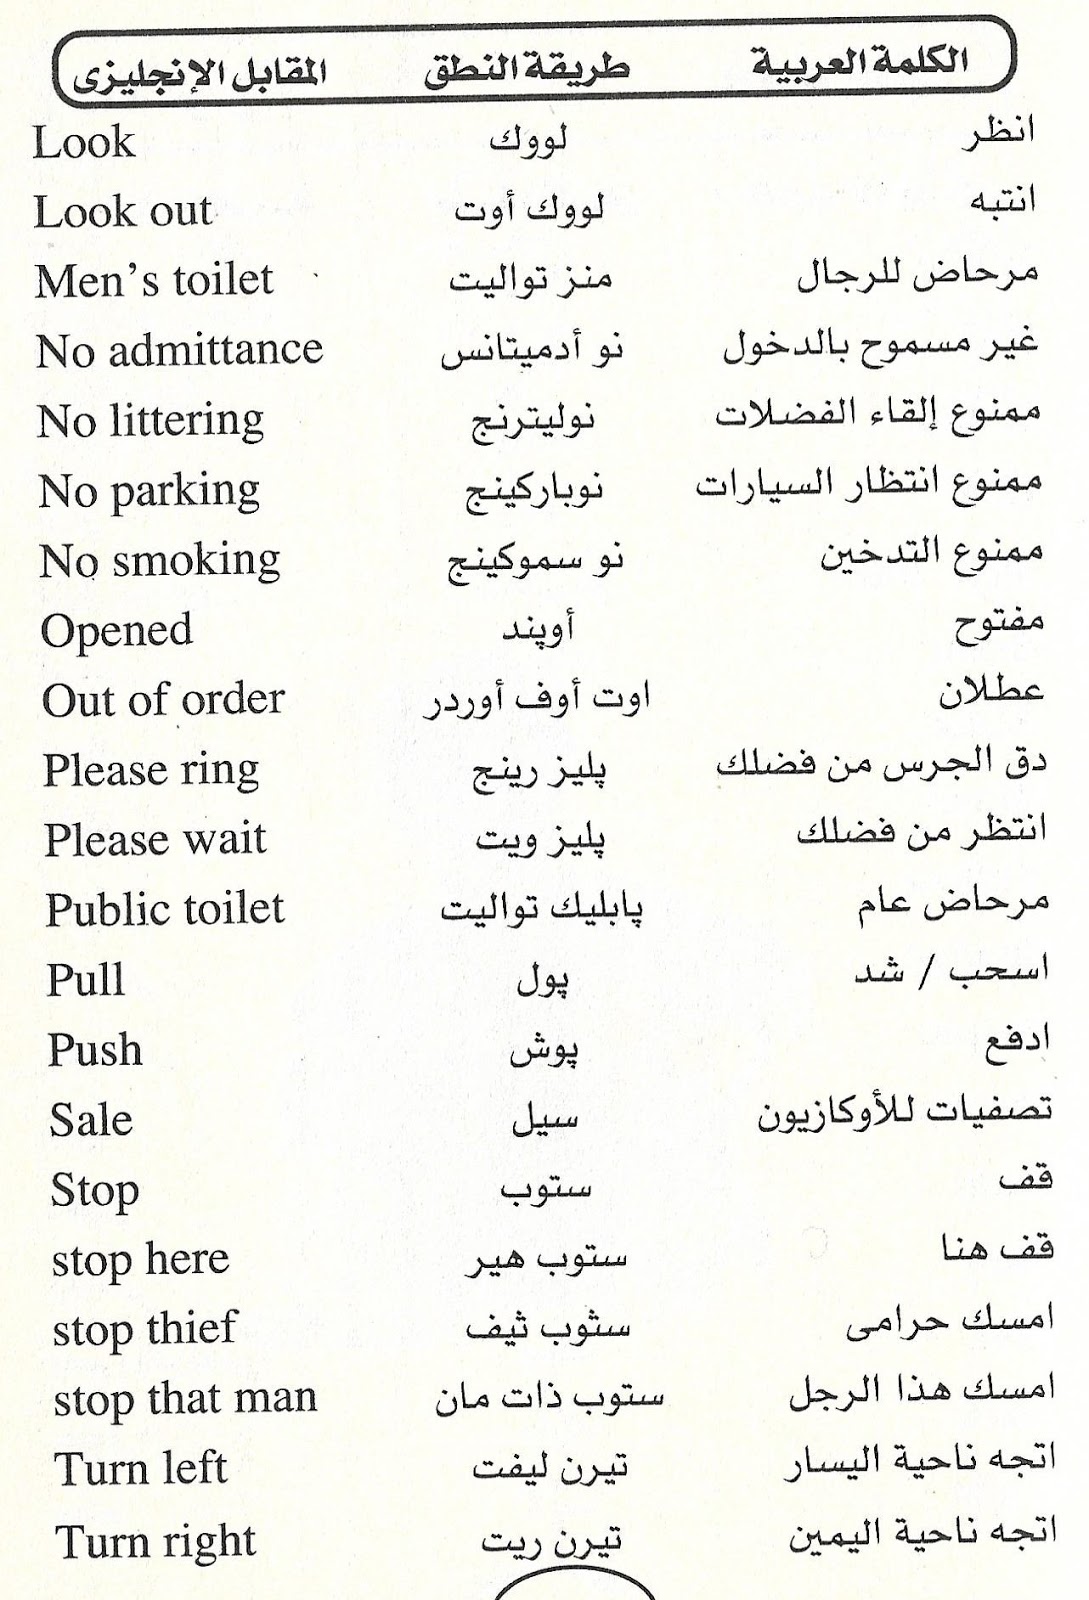 الانجليزية تعليم بالعربي اللغة حفظ كلمات